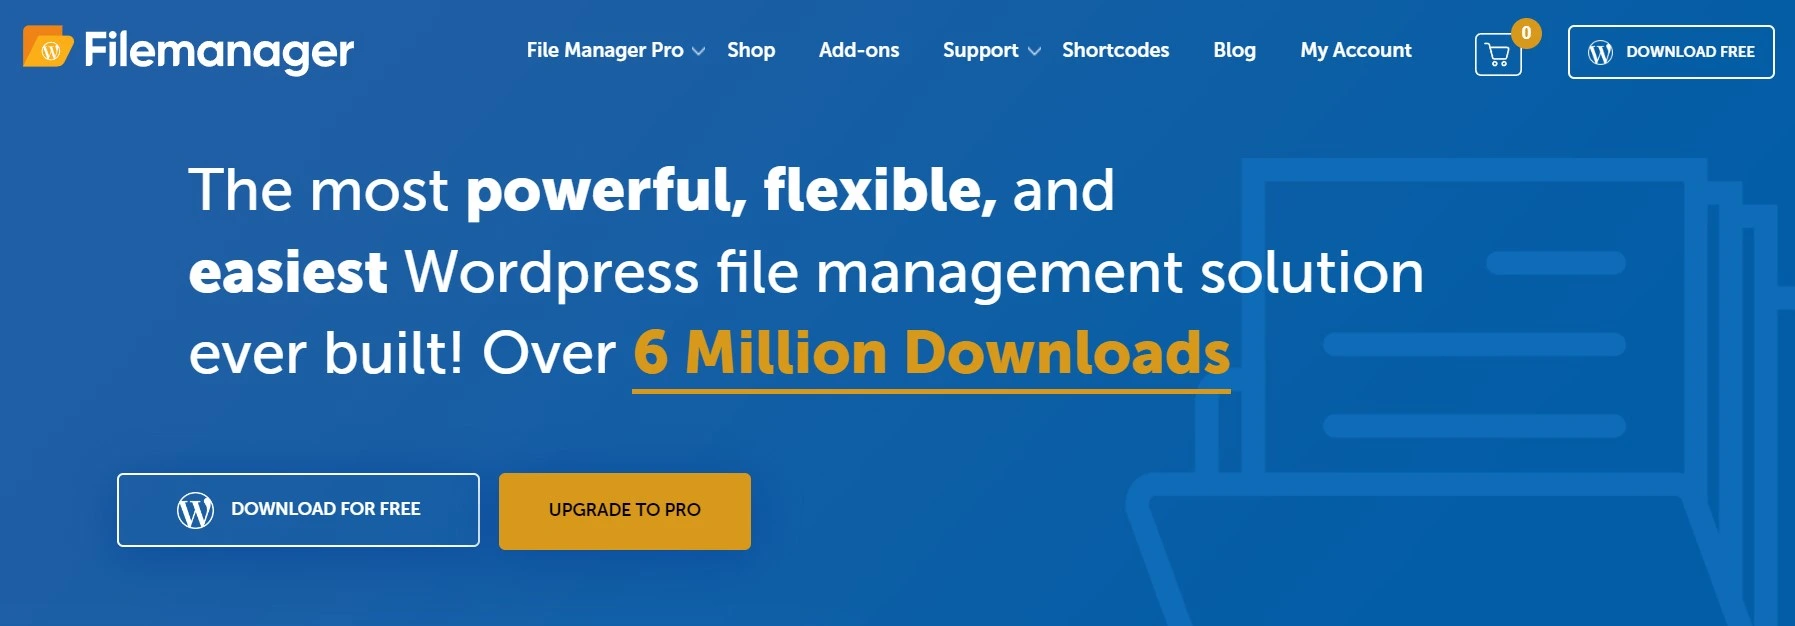 File Manager Best File Manager Plugins For Wordpress.webp